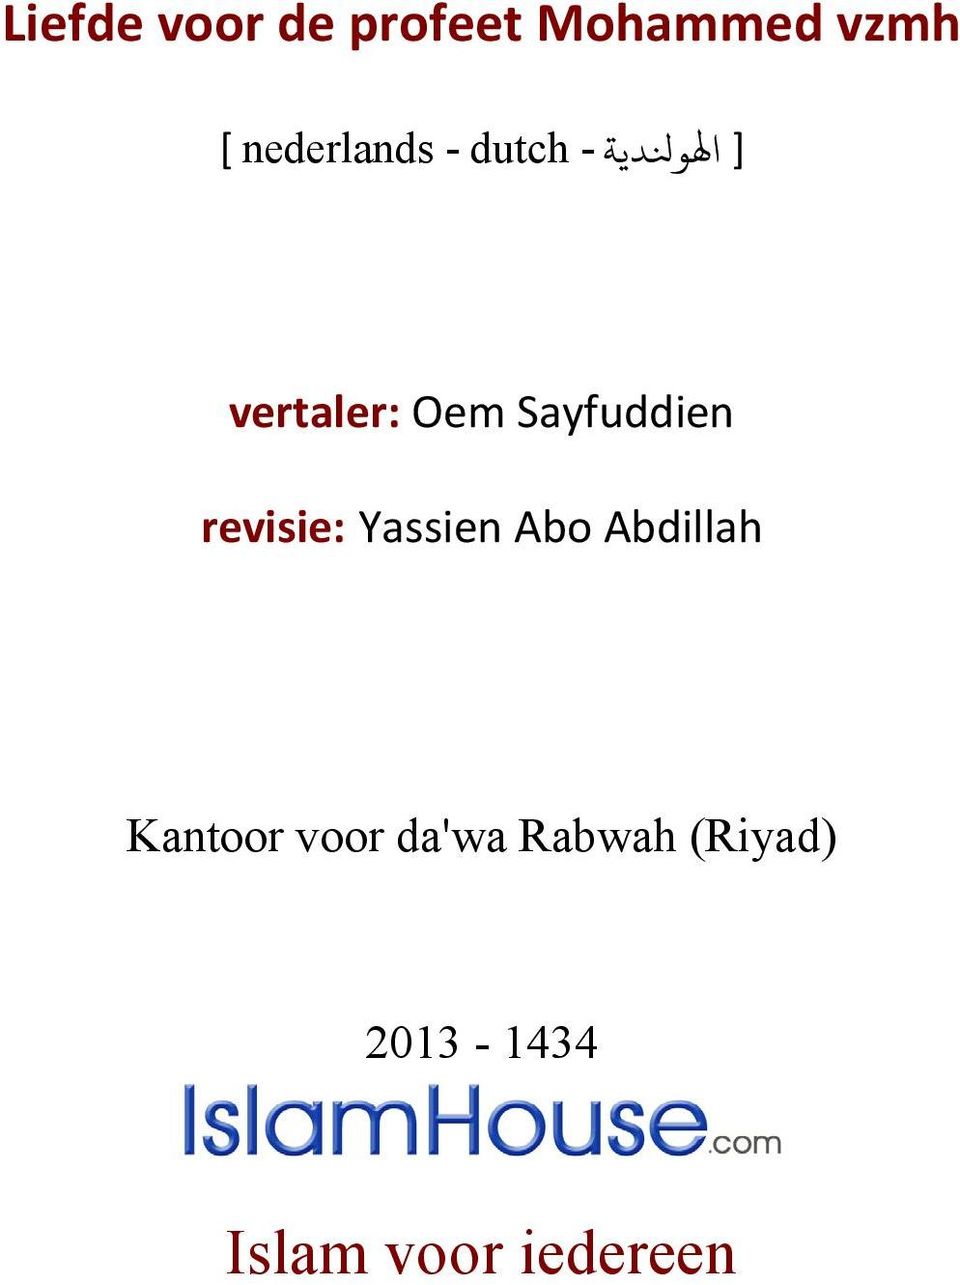 Sayfuddien revisie: Yassien Abo Abdillah